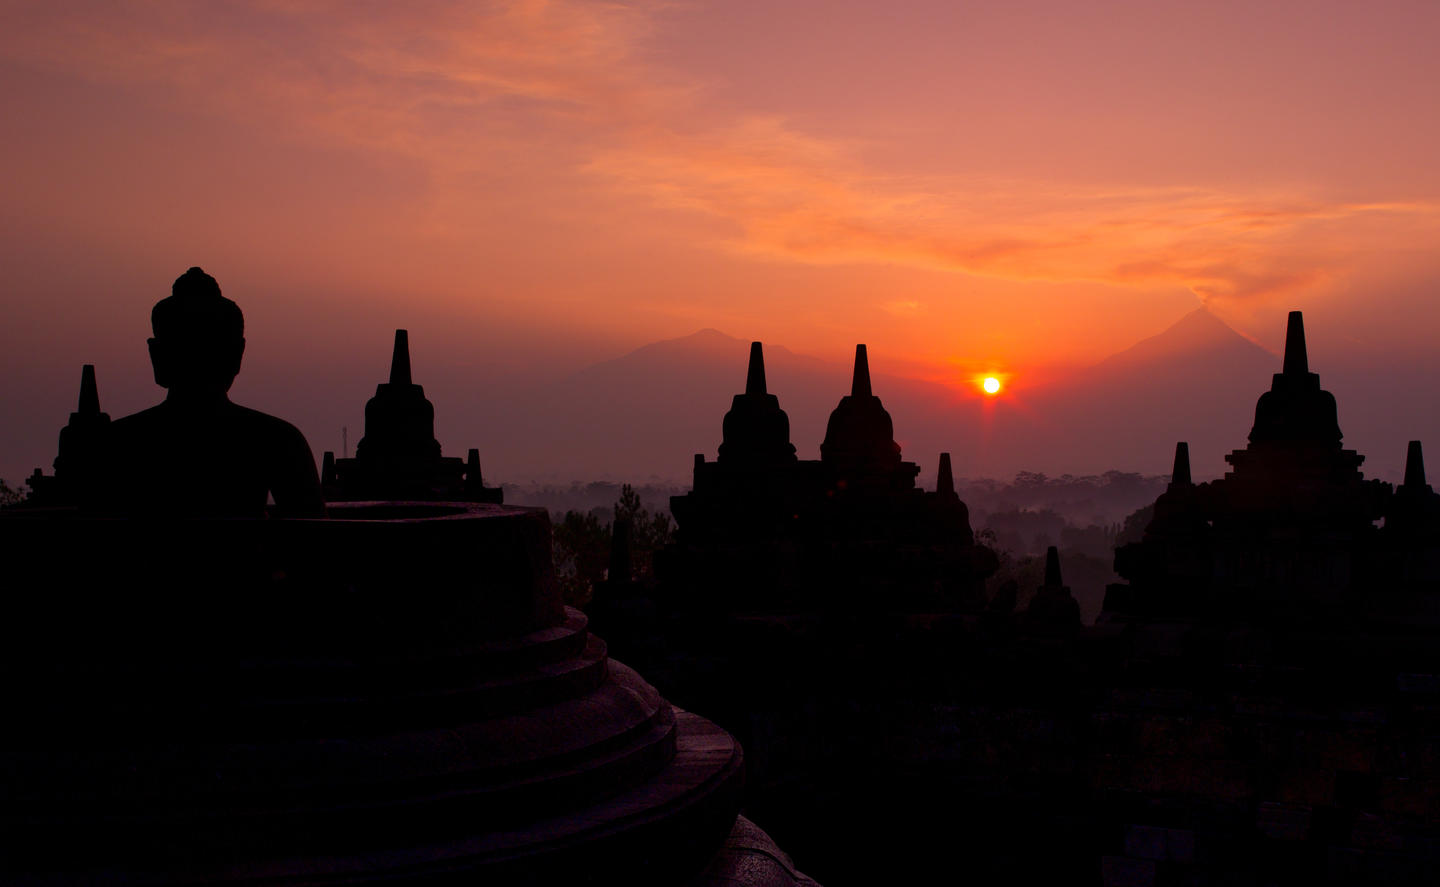 Amanjiwo - Borobudur Sunrise